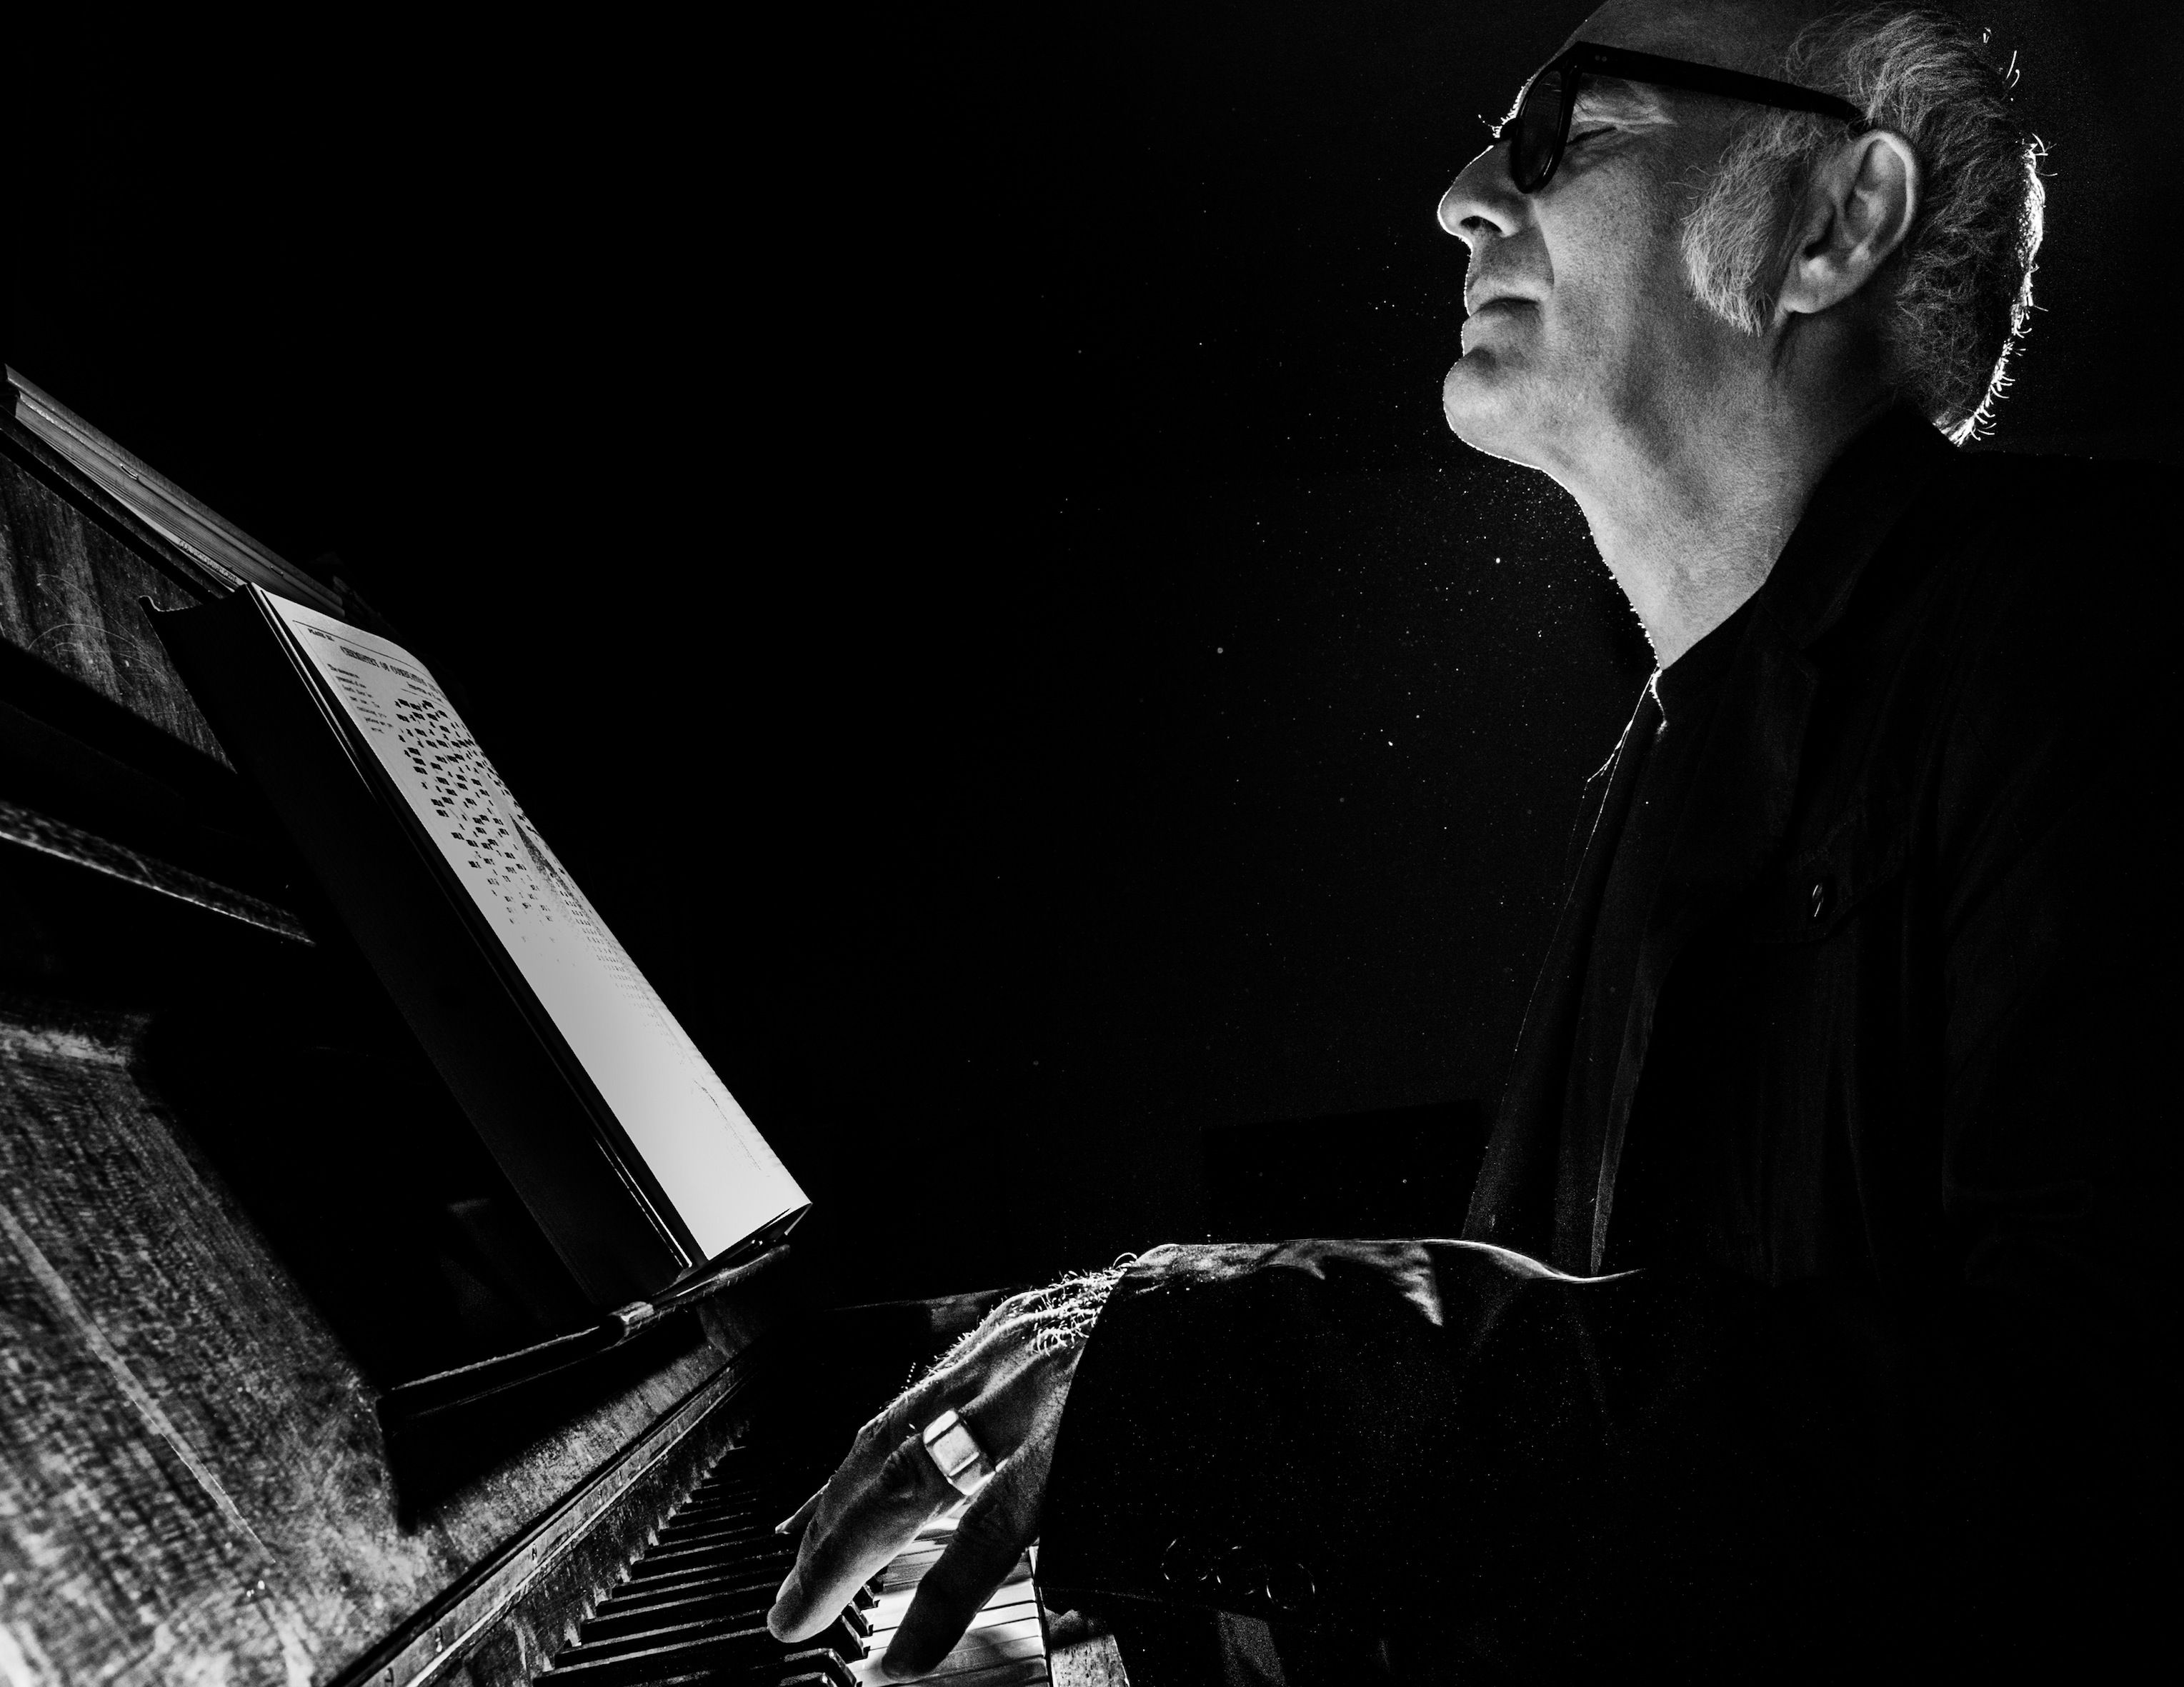 Ludovico Einaudi playing piano, black and white photo